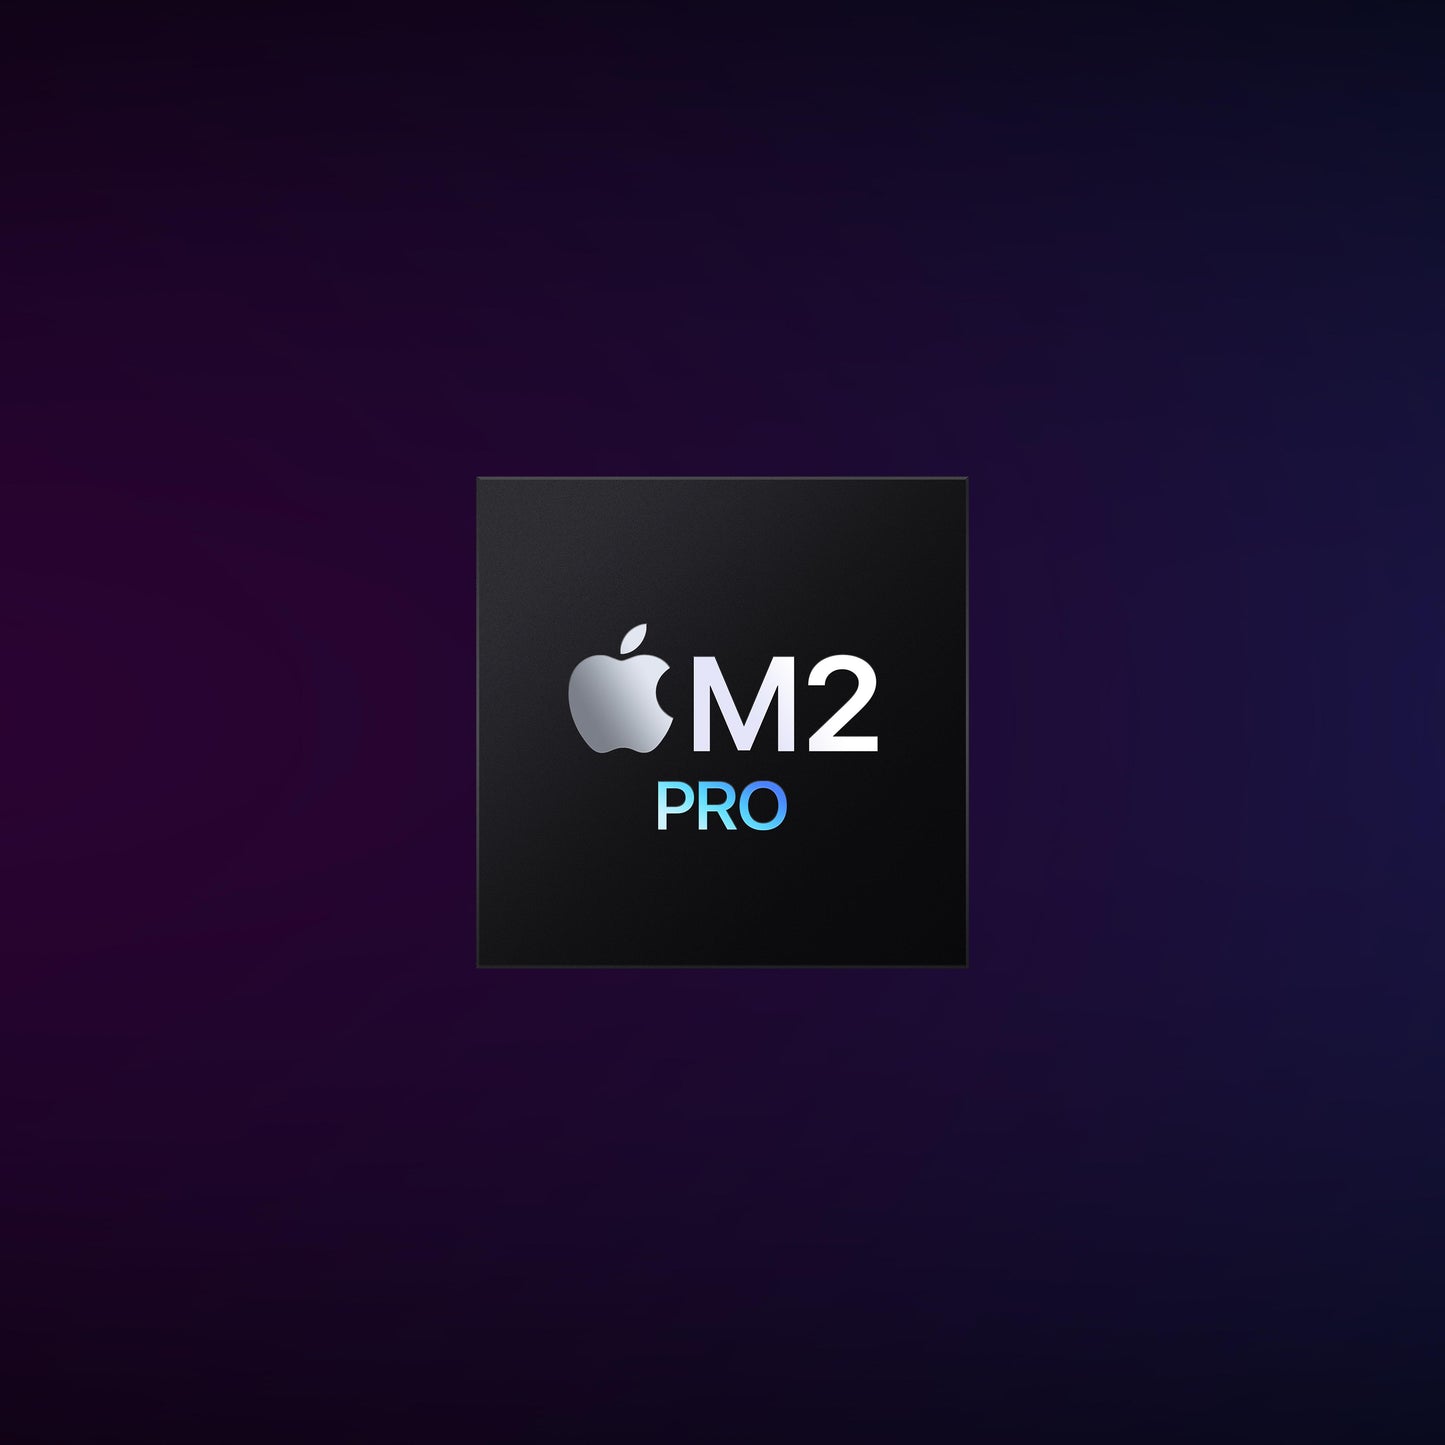 Mac mini: Apple M2 Pro‑chip met 10‑core CPU en 16‑core GPU, 512 GB